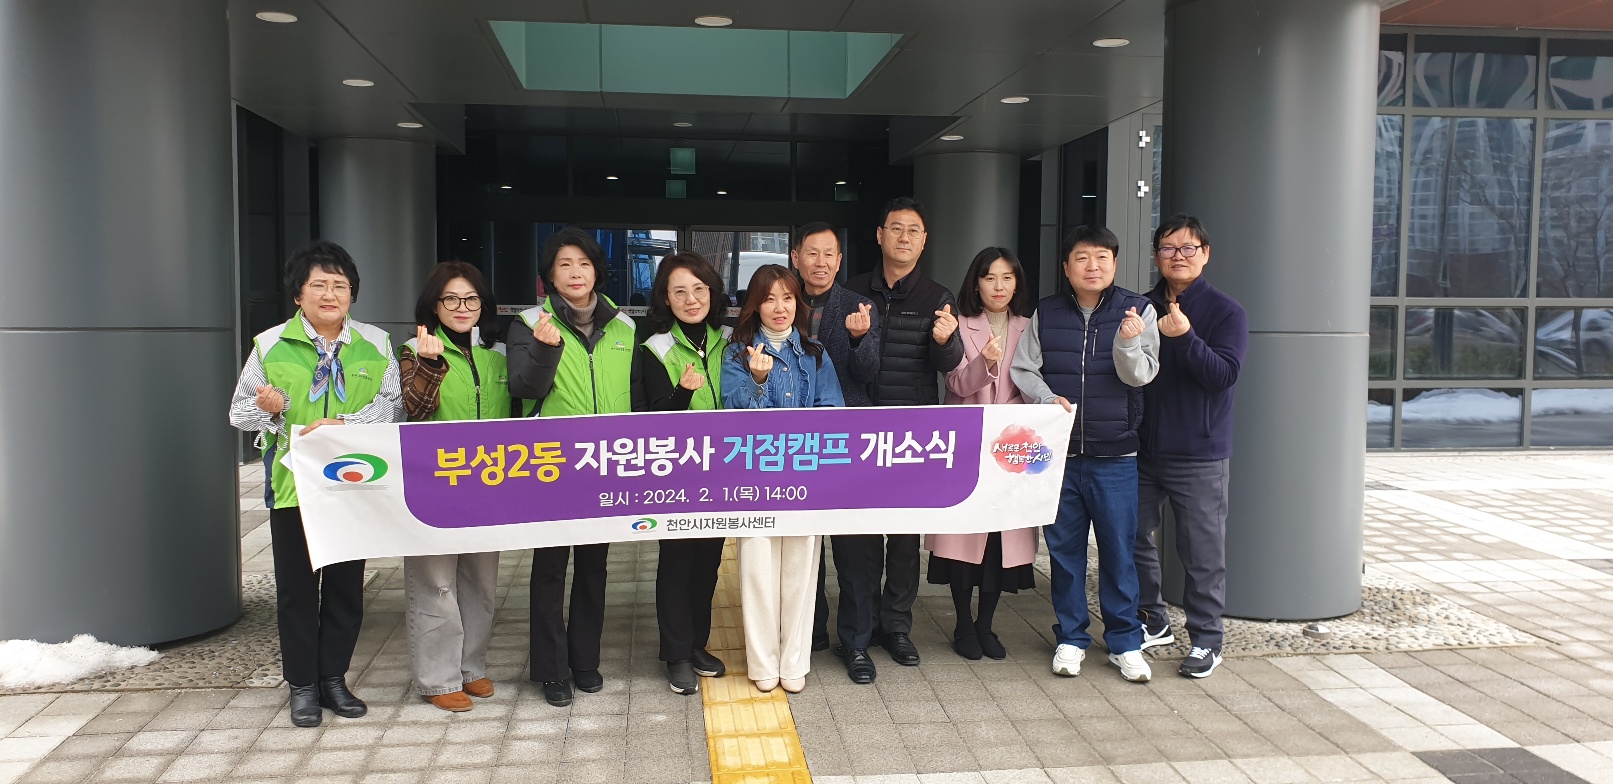 천안시자원봉사센터, 부성2동 자원봉사 거점캠프 개소